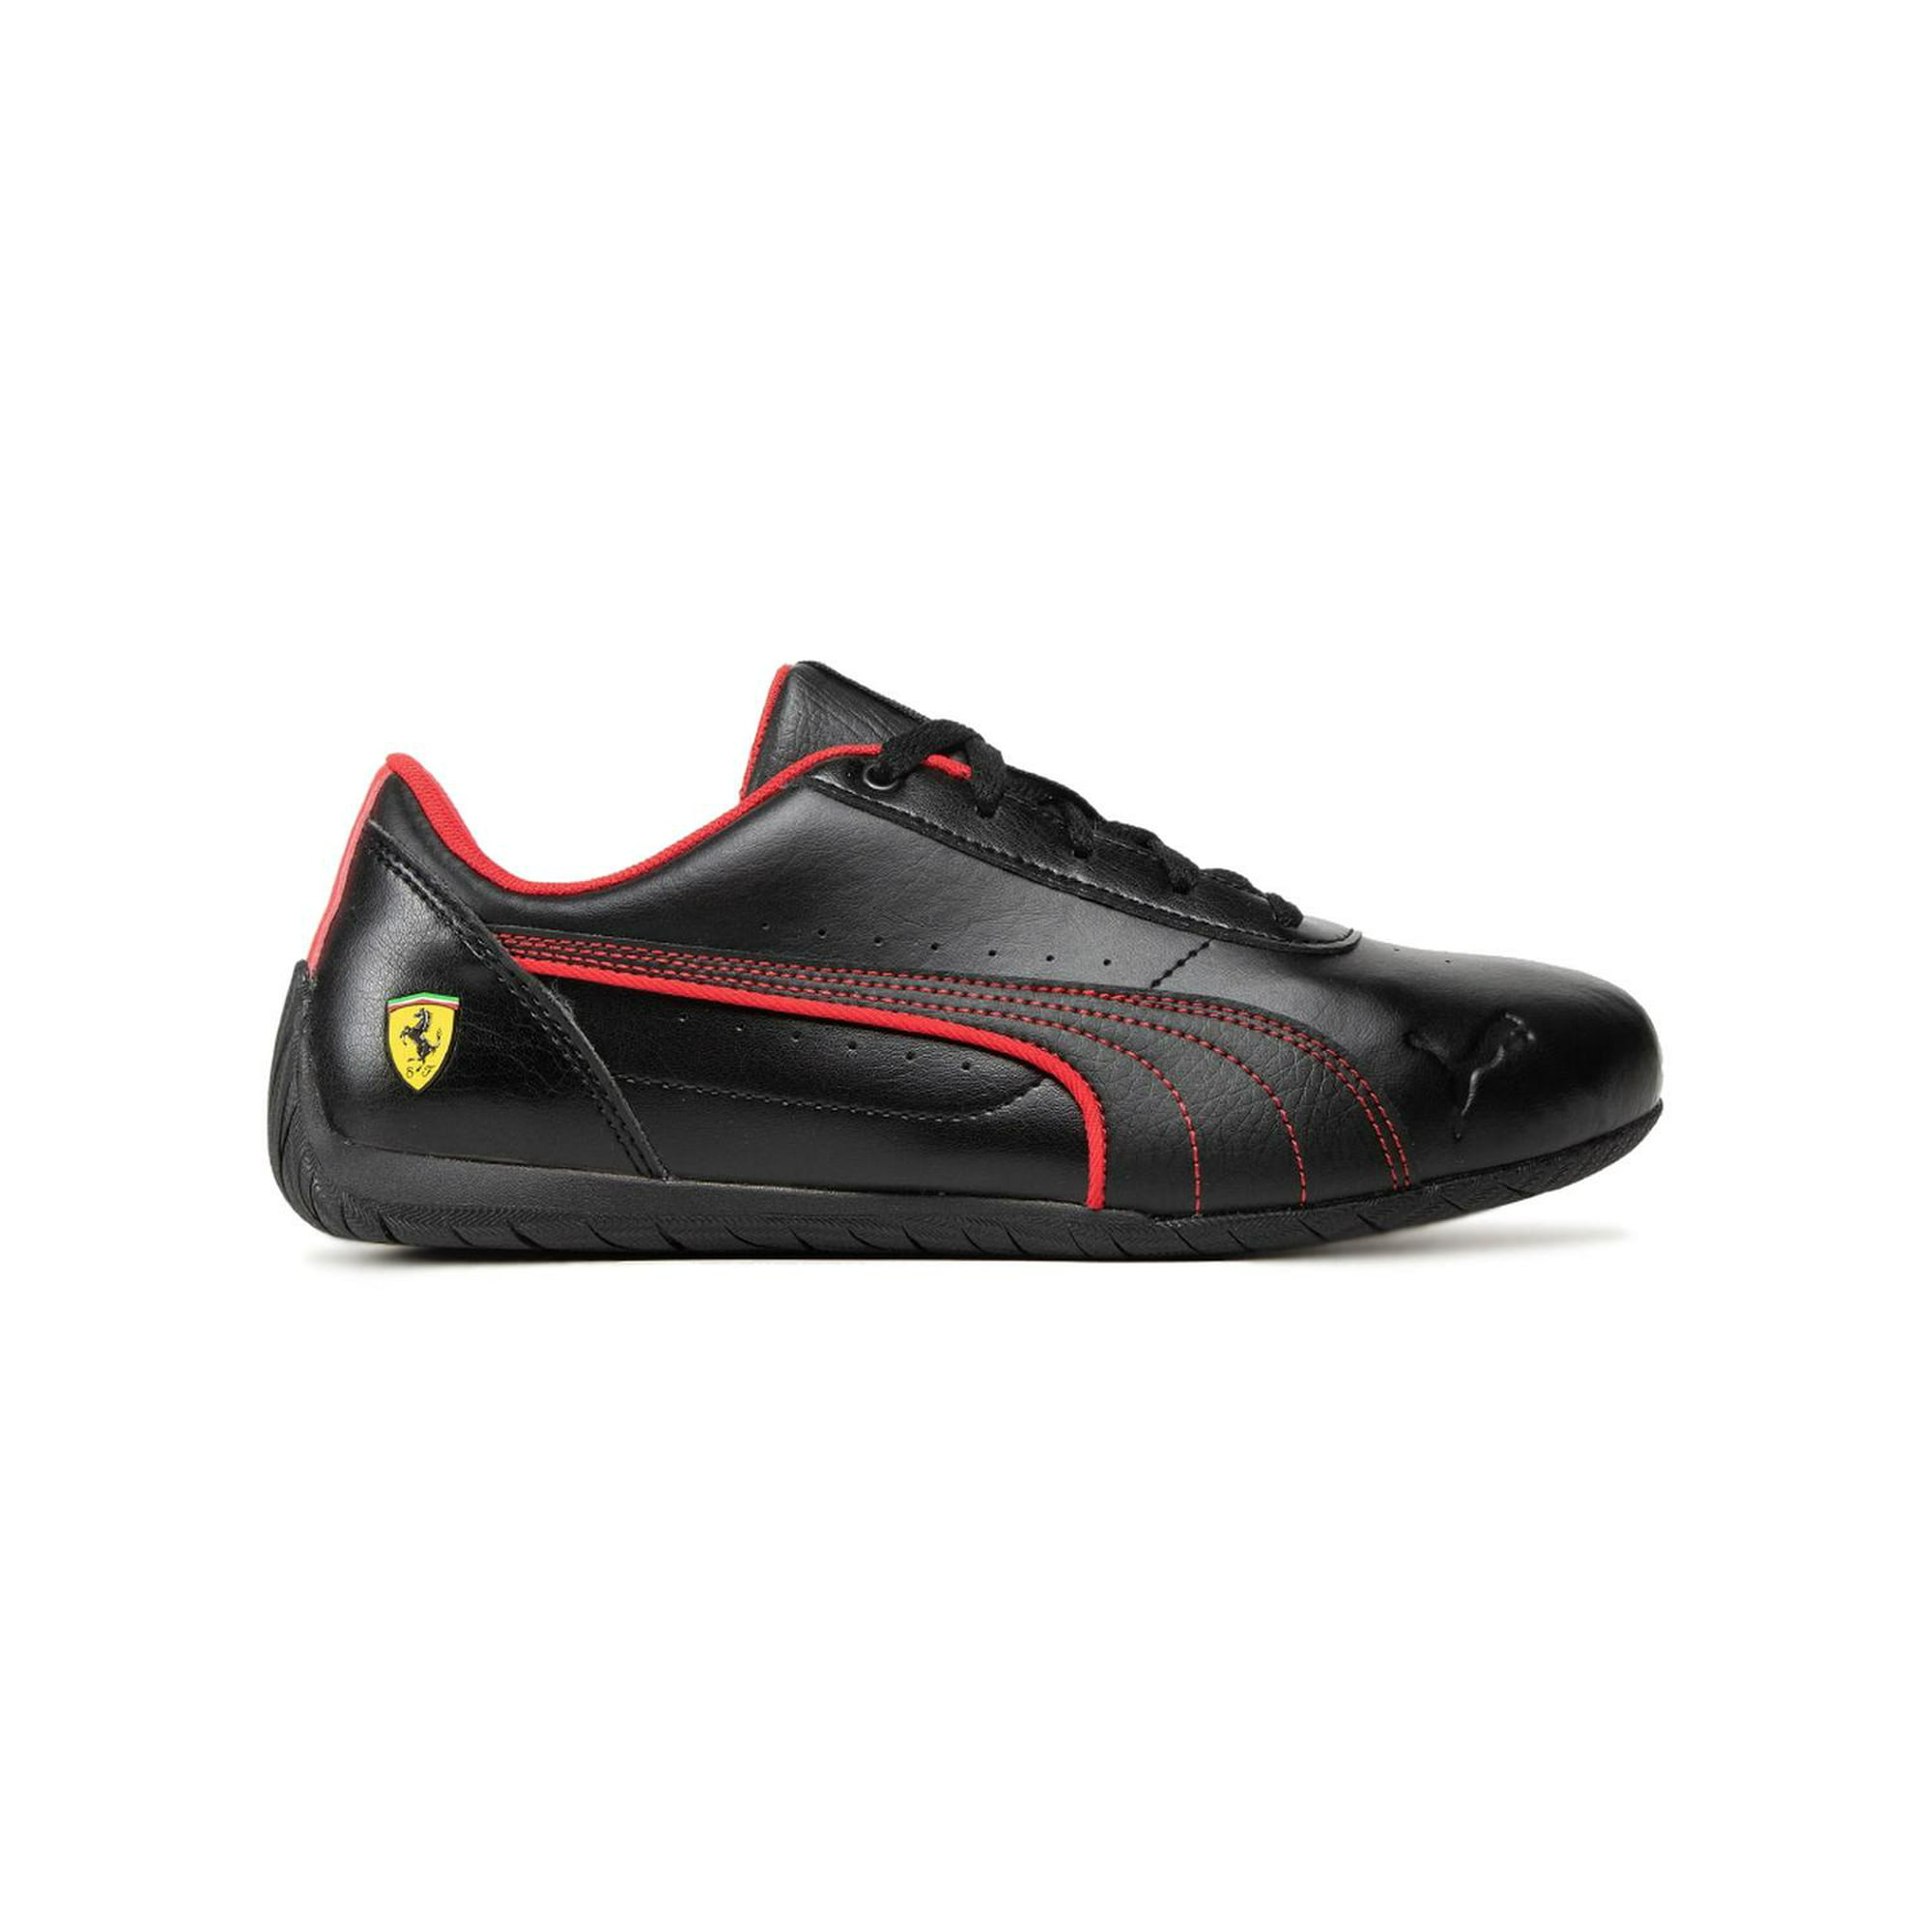 Tenis Puma Ferrari Neo Cat Hombre negro 25.5 307019 01 Walmart en línea